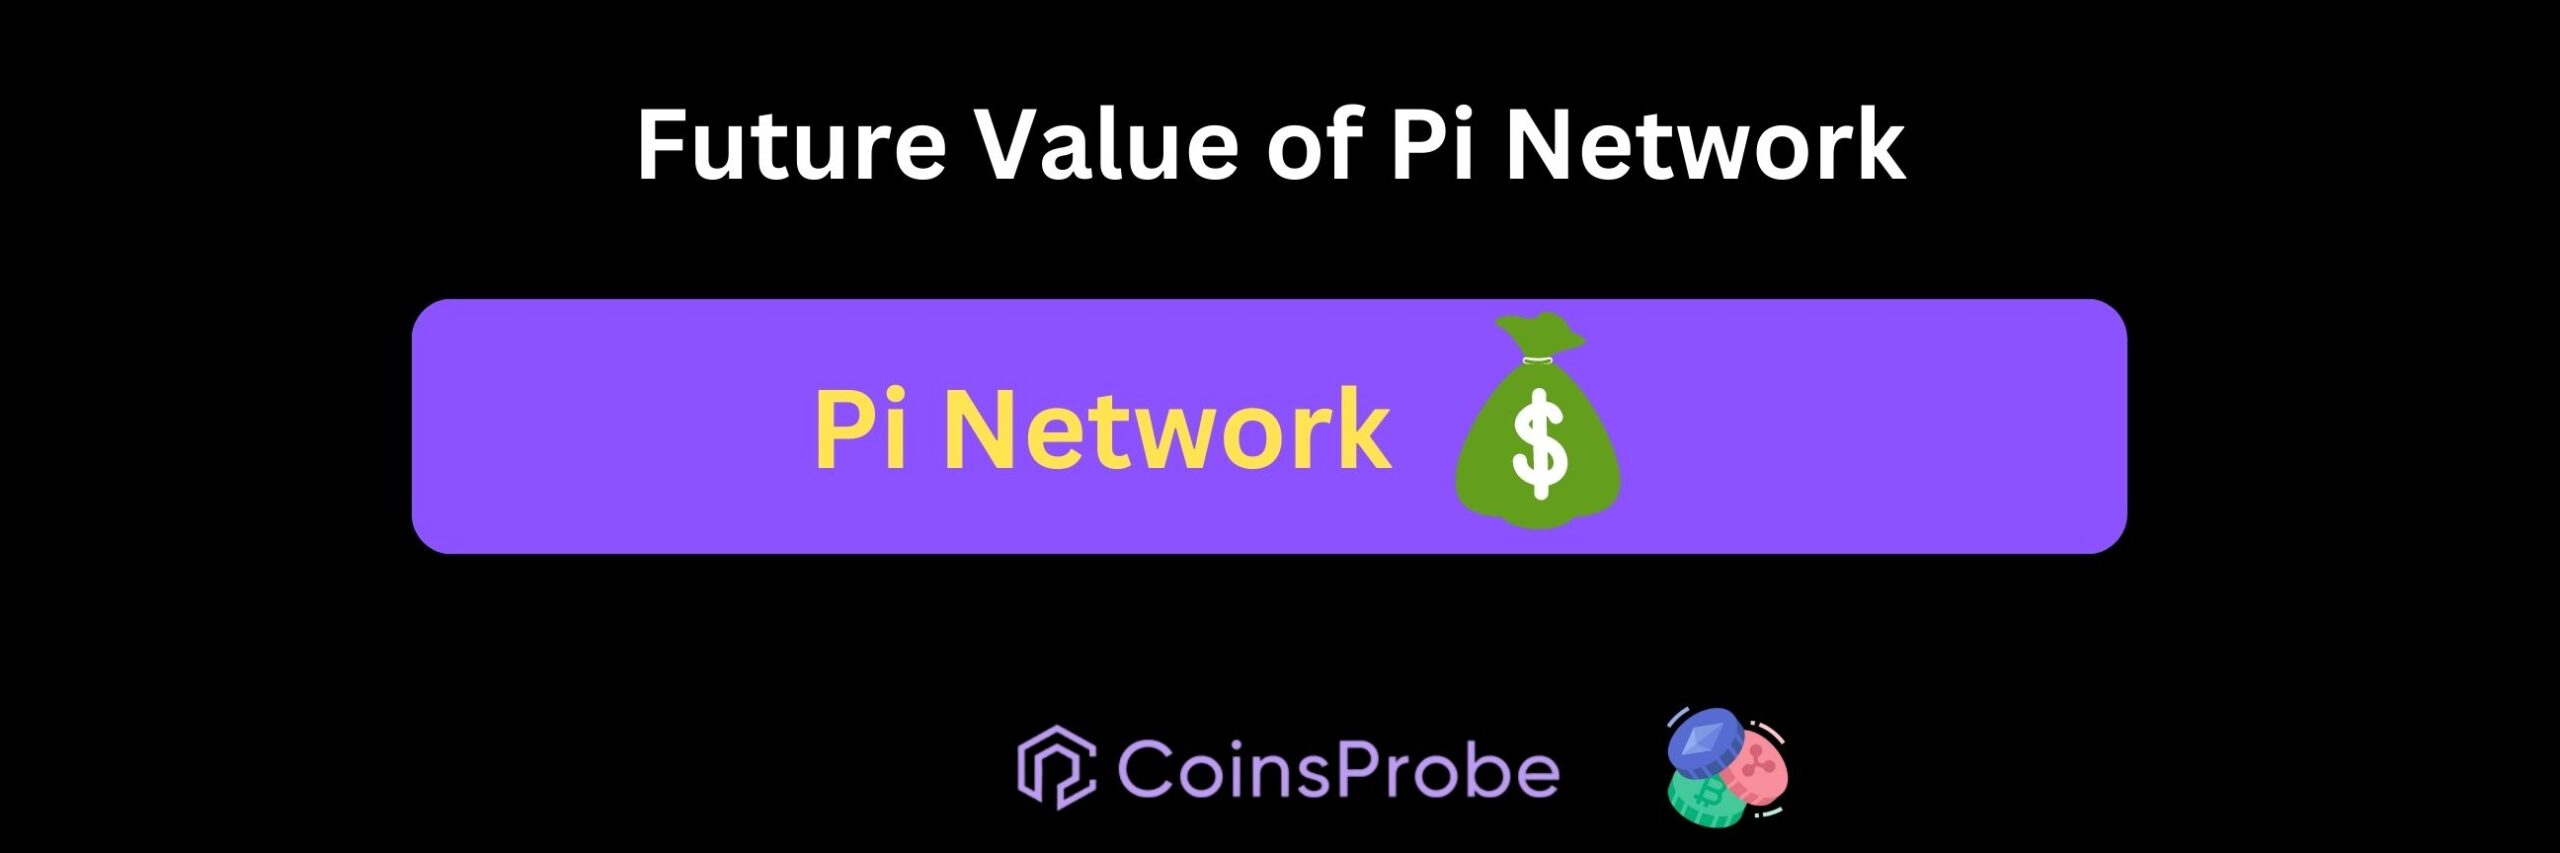 Future Value of Pi Network